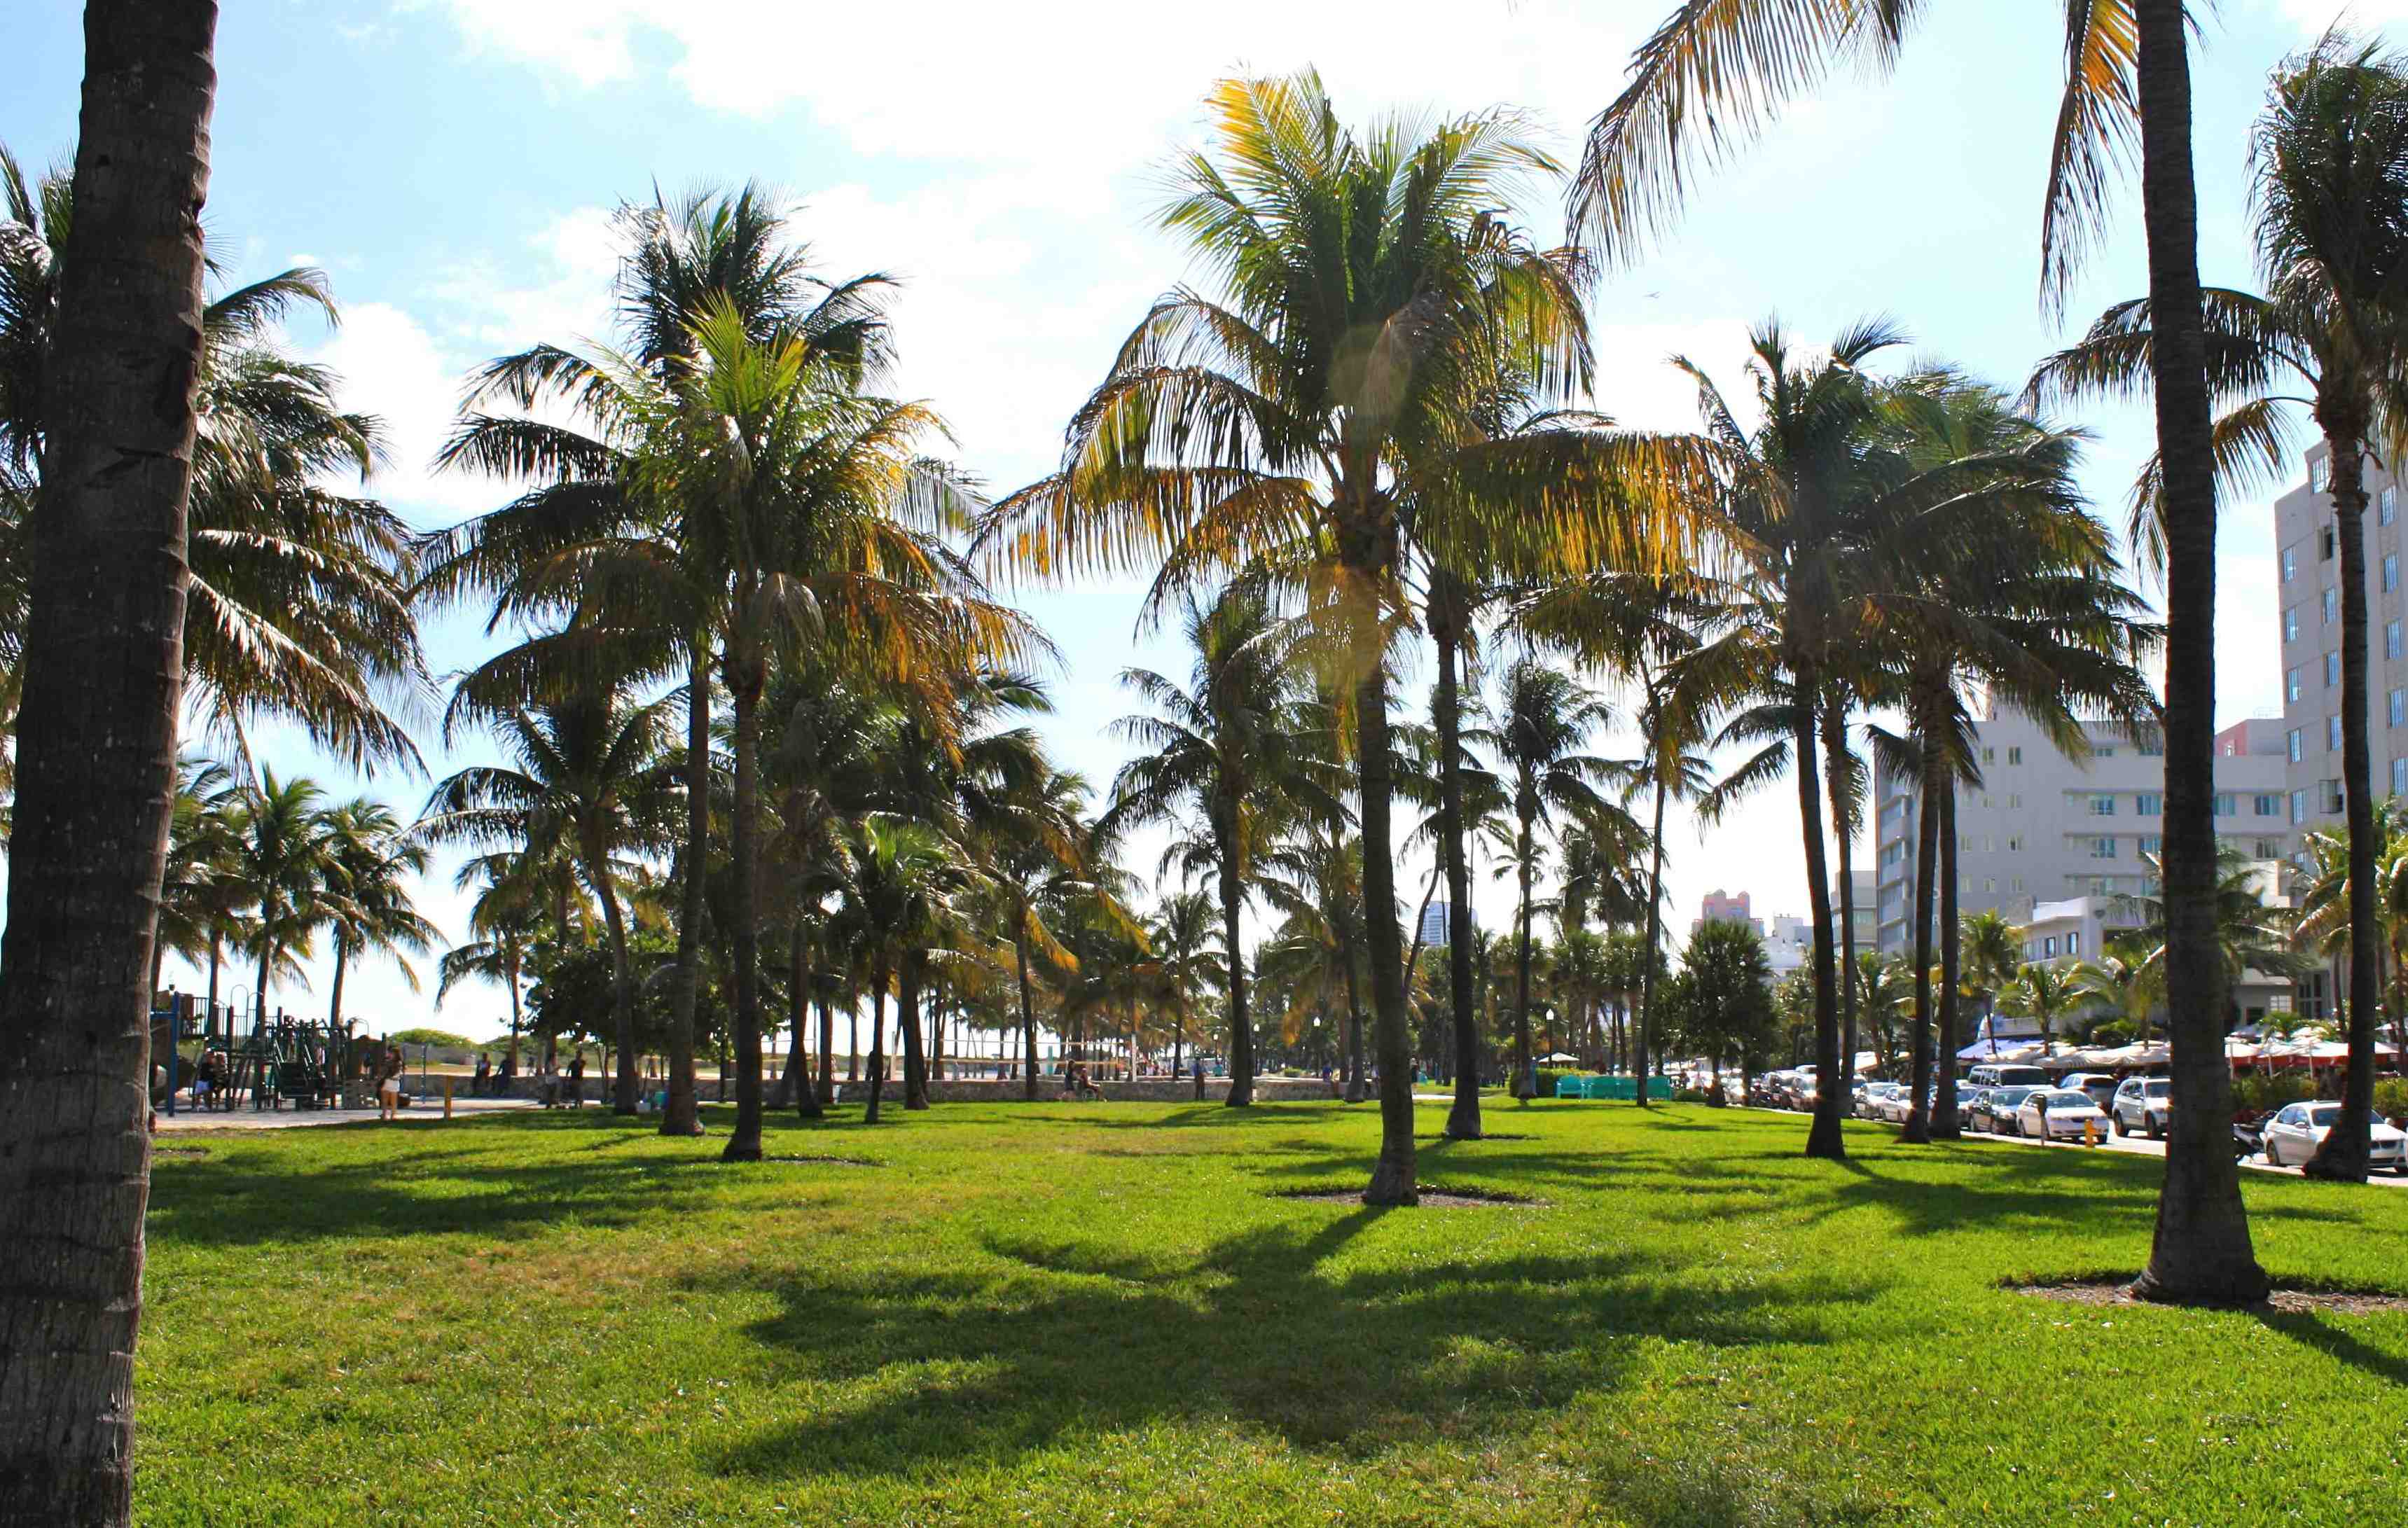 Lummis Park, Florida, Miami Beach, South Beach, Ocean Drive